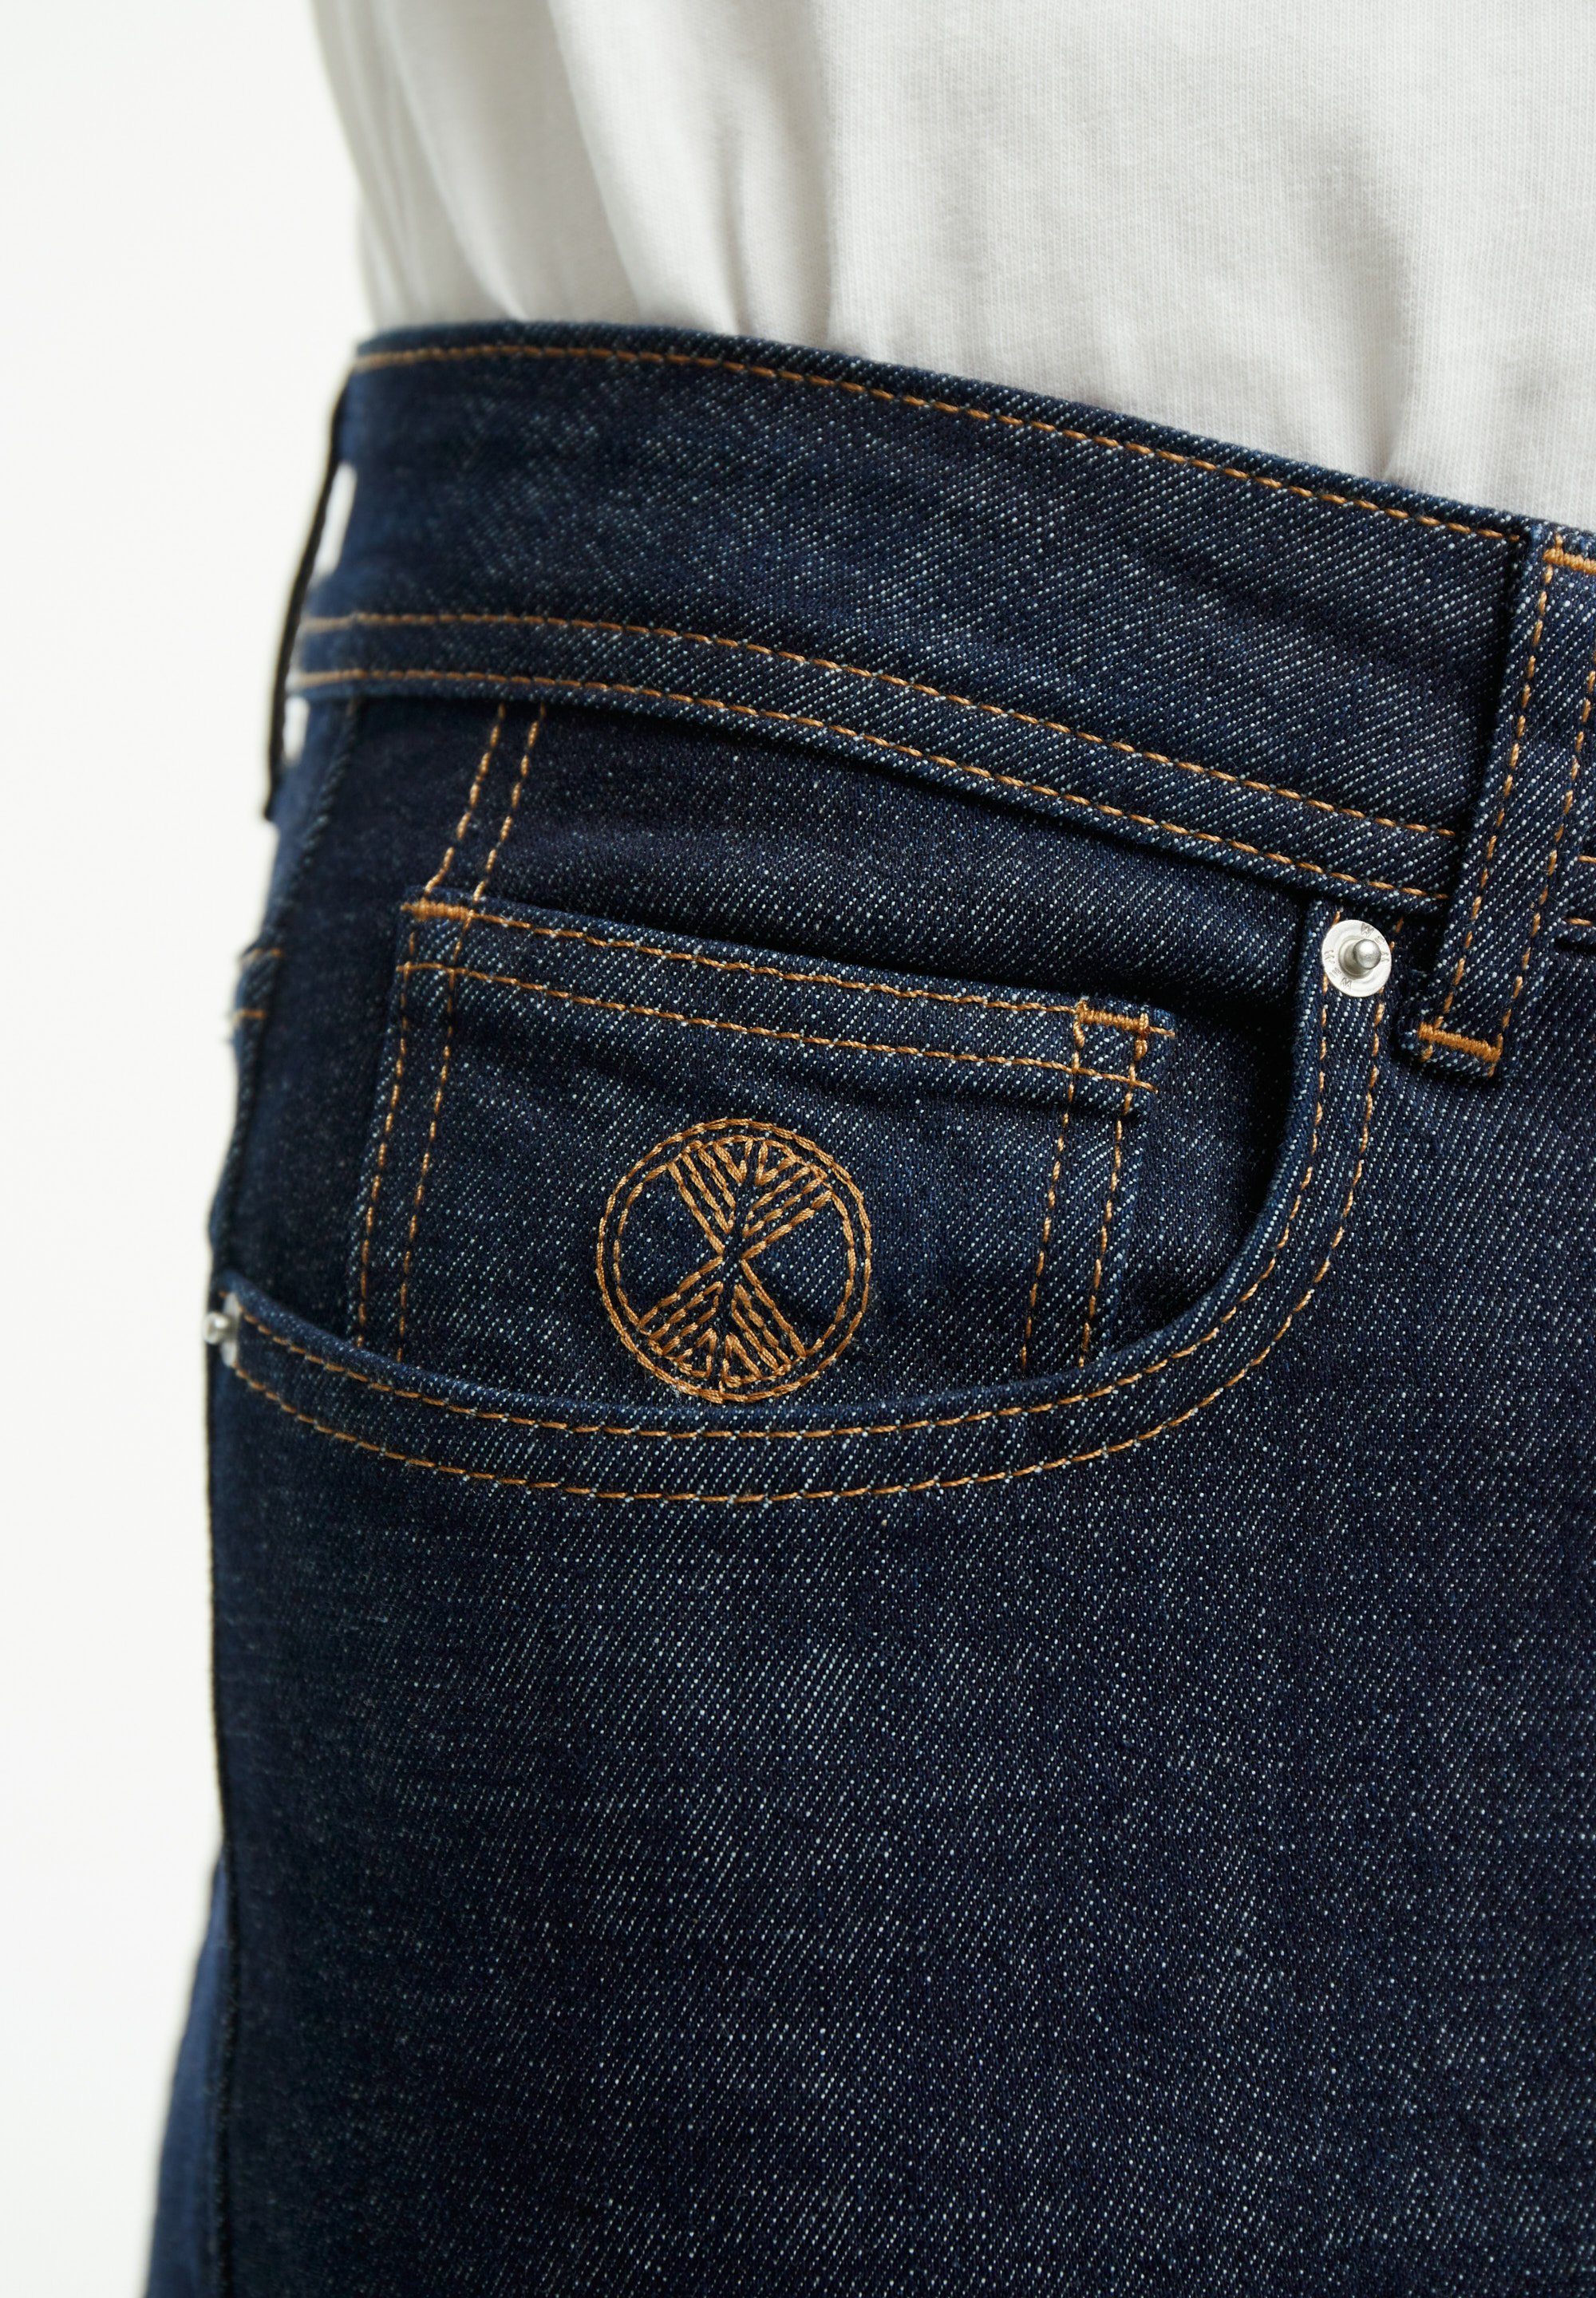 Bundhöhe: Mittlere Oben rinse unten Tapered-fit-Jeans denim – wem Oscar Fit Tapered breiter, schmaler